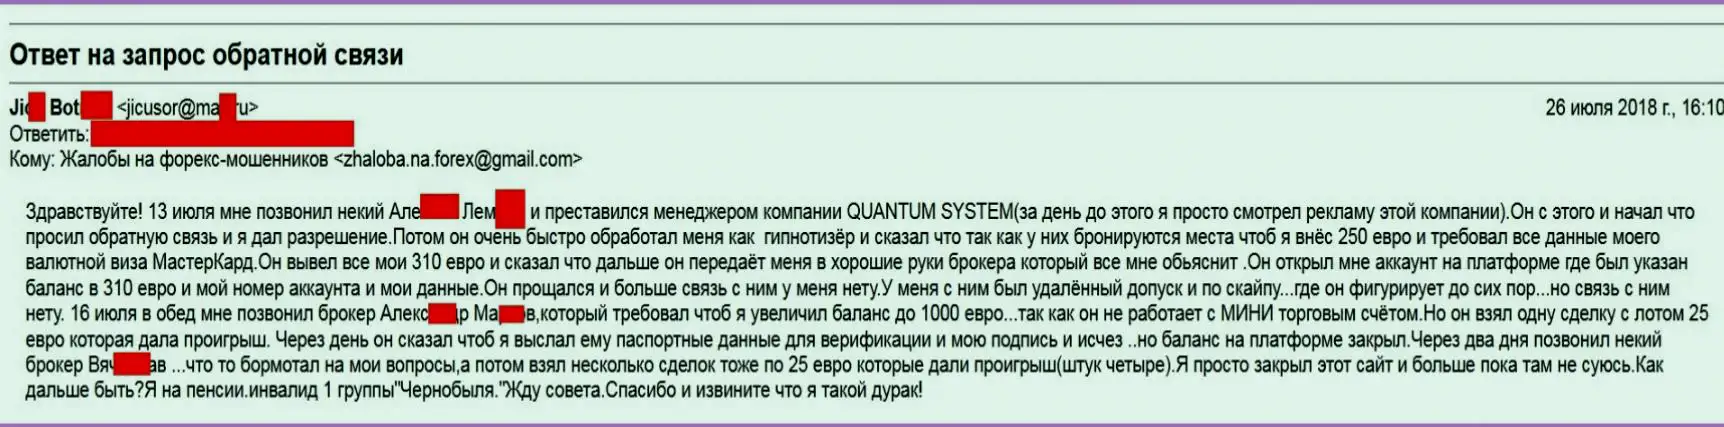 Позвонить брокеру. Quantum System. Quantum System реальные отзывы развод или правда. Quantum System .org. Quantum System лицензии.